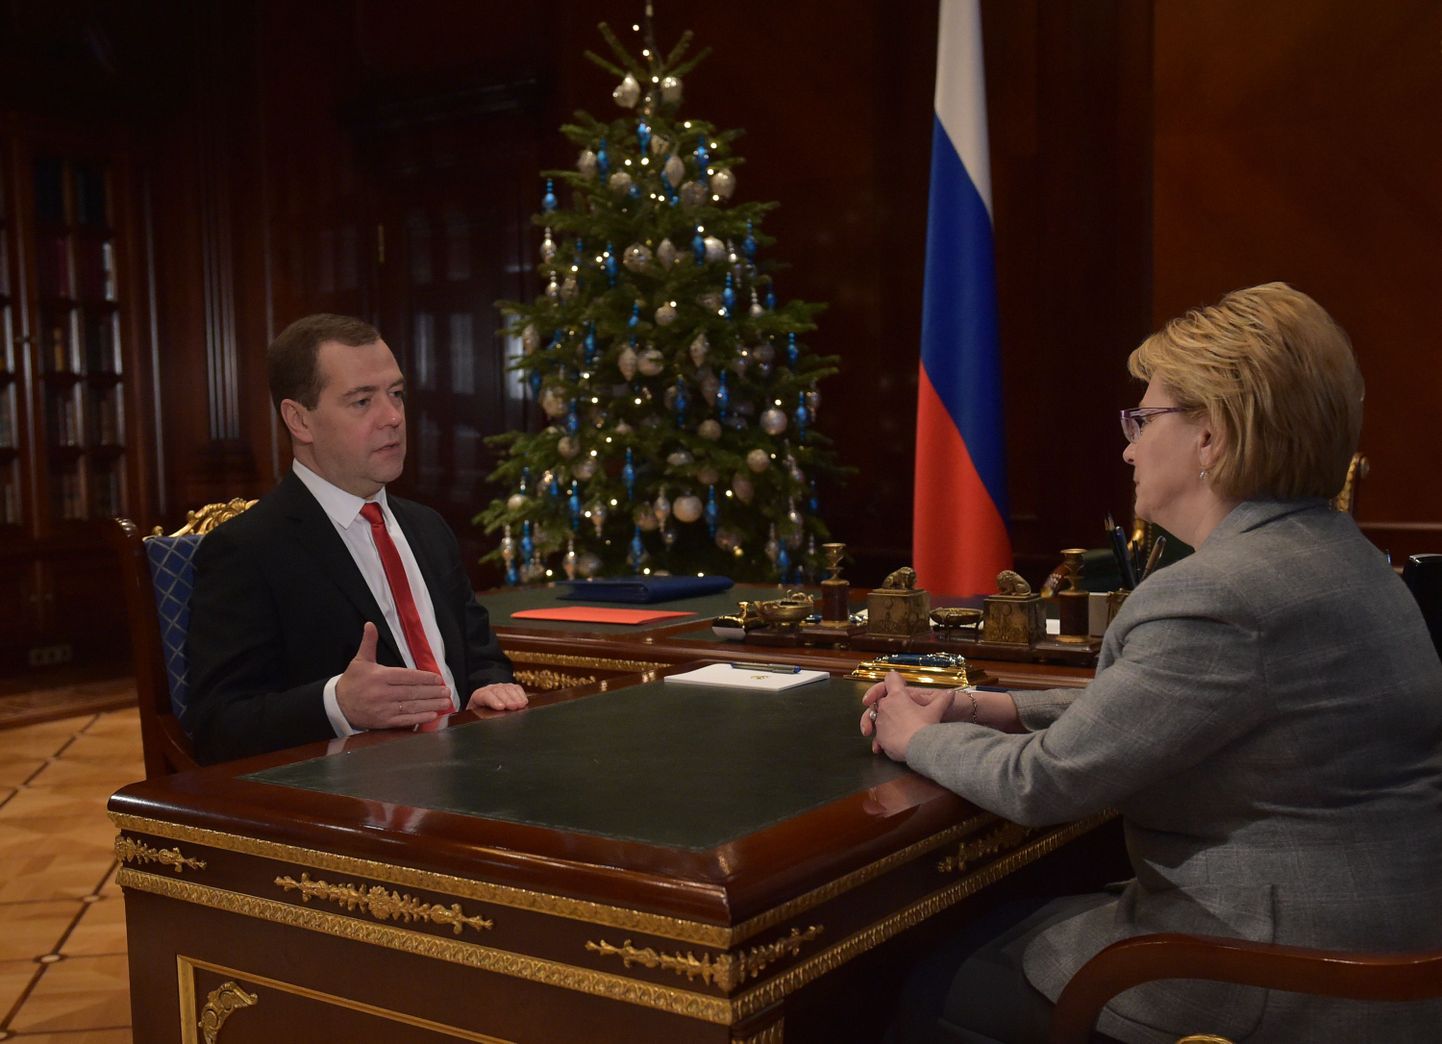 Venemaa peaminister Dmitri Medvedev ja tervishoiuminister Veronika Skvortsova arutasid ravimite teemat 6. jaanuaril.